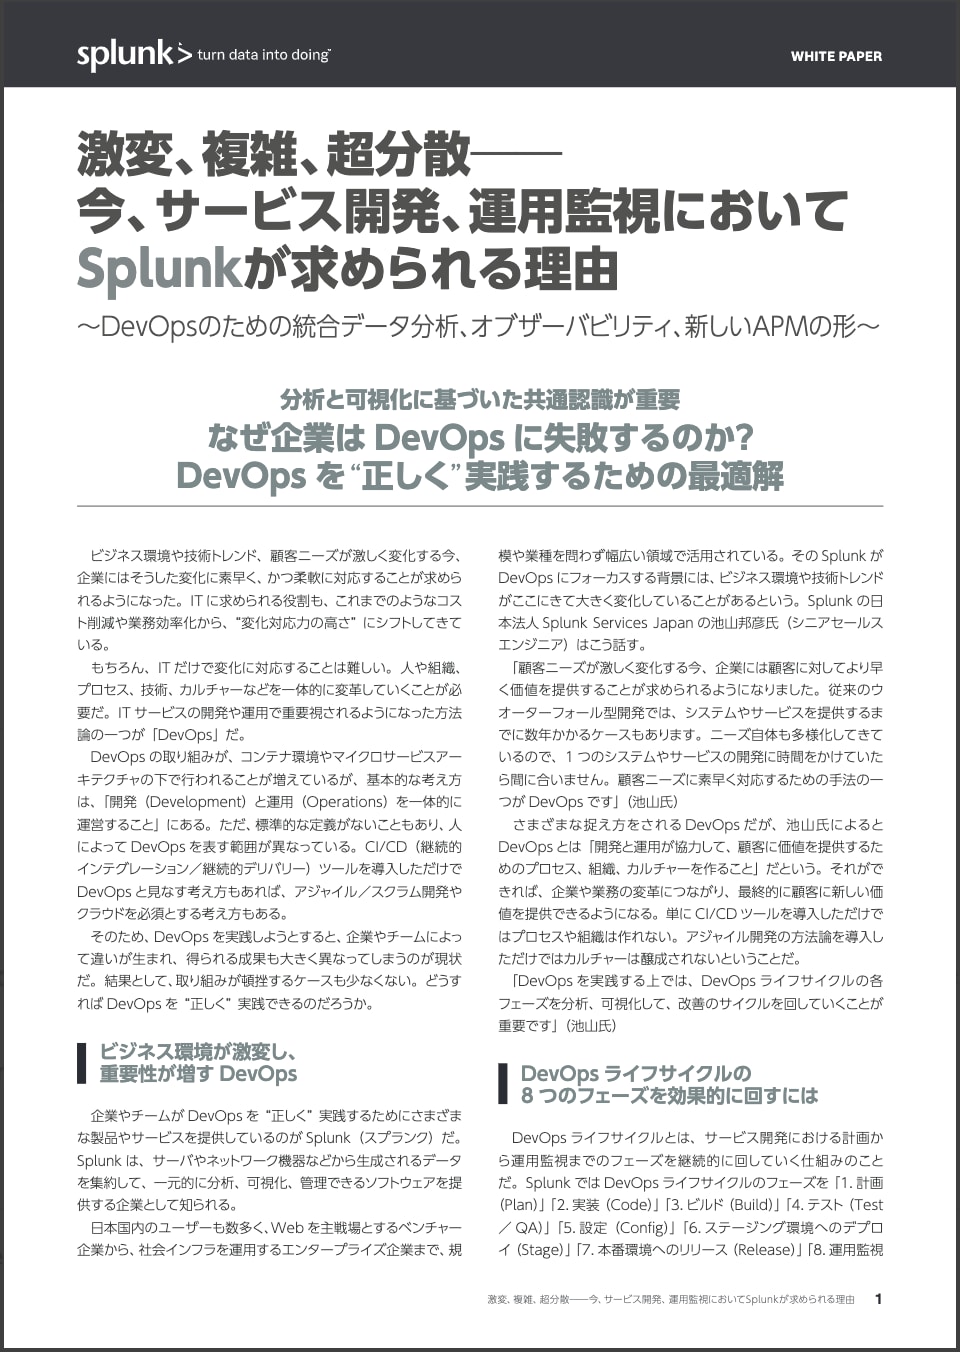 Splunkによる2021年の予測 - IT運用編